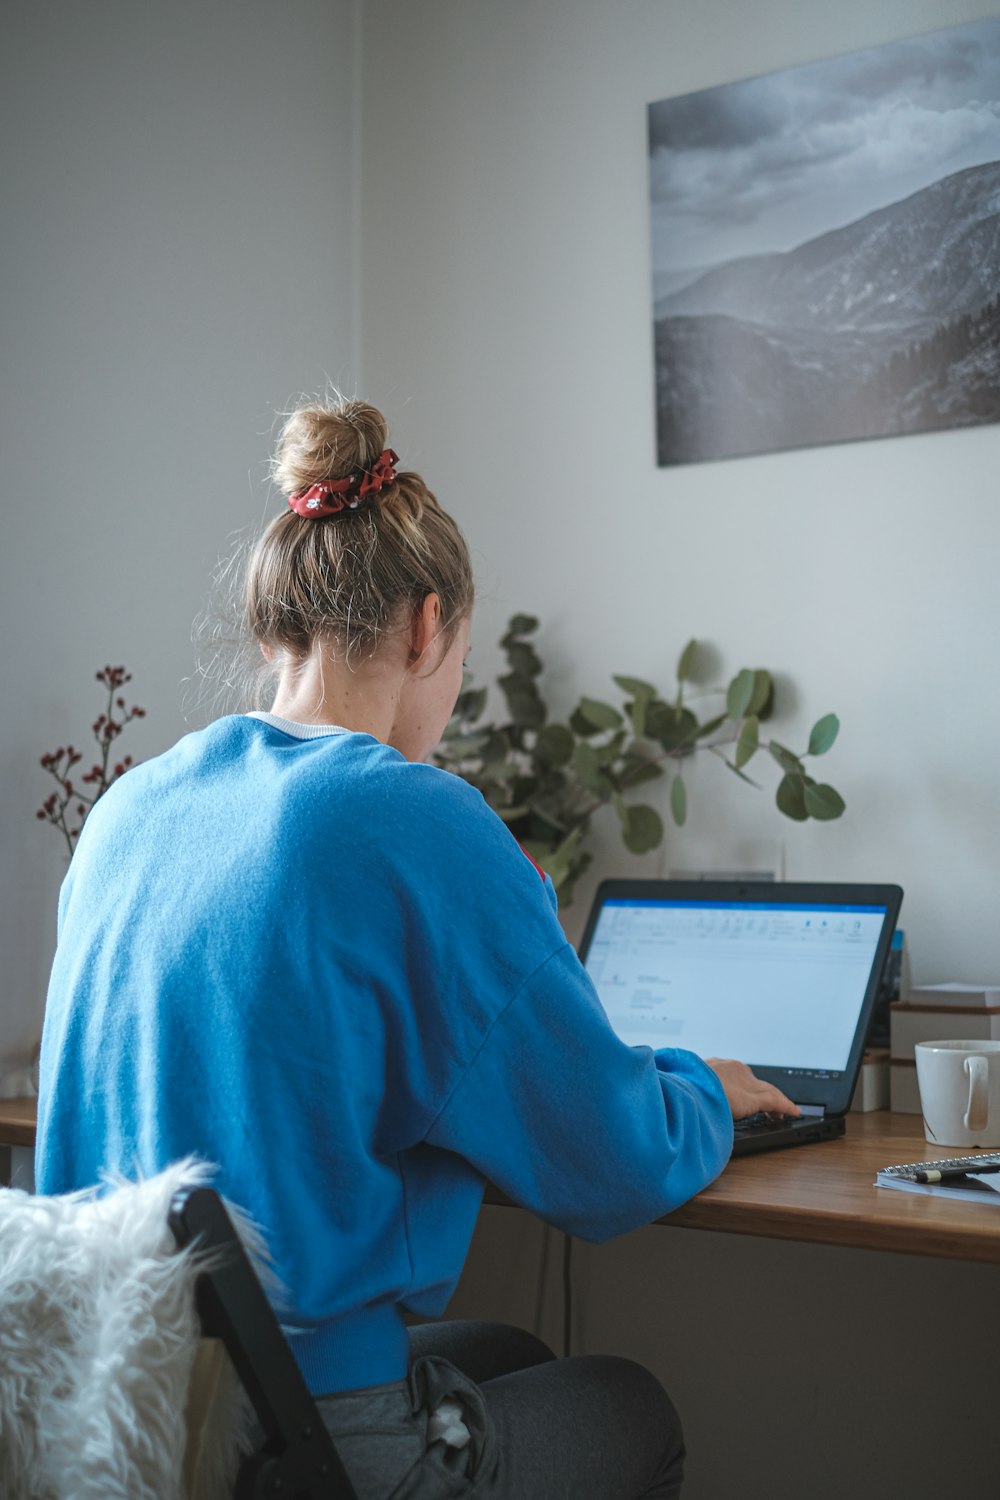 ノートパソコンの前に座る青いセーターを着た女性